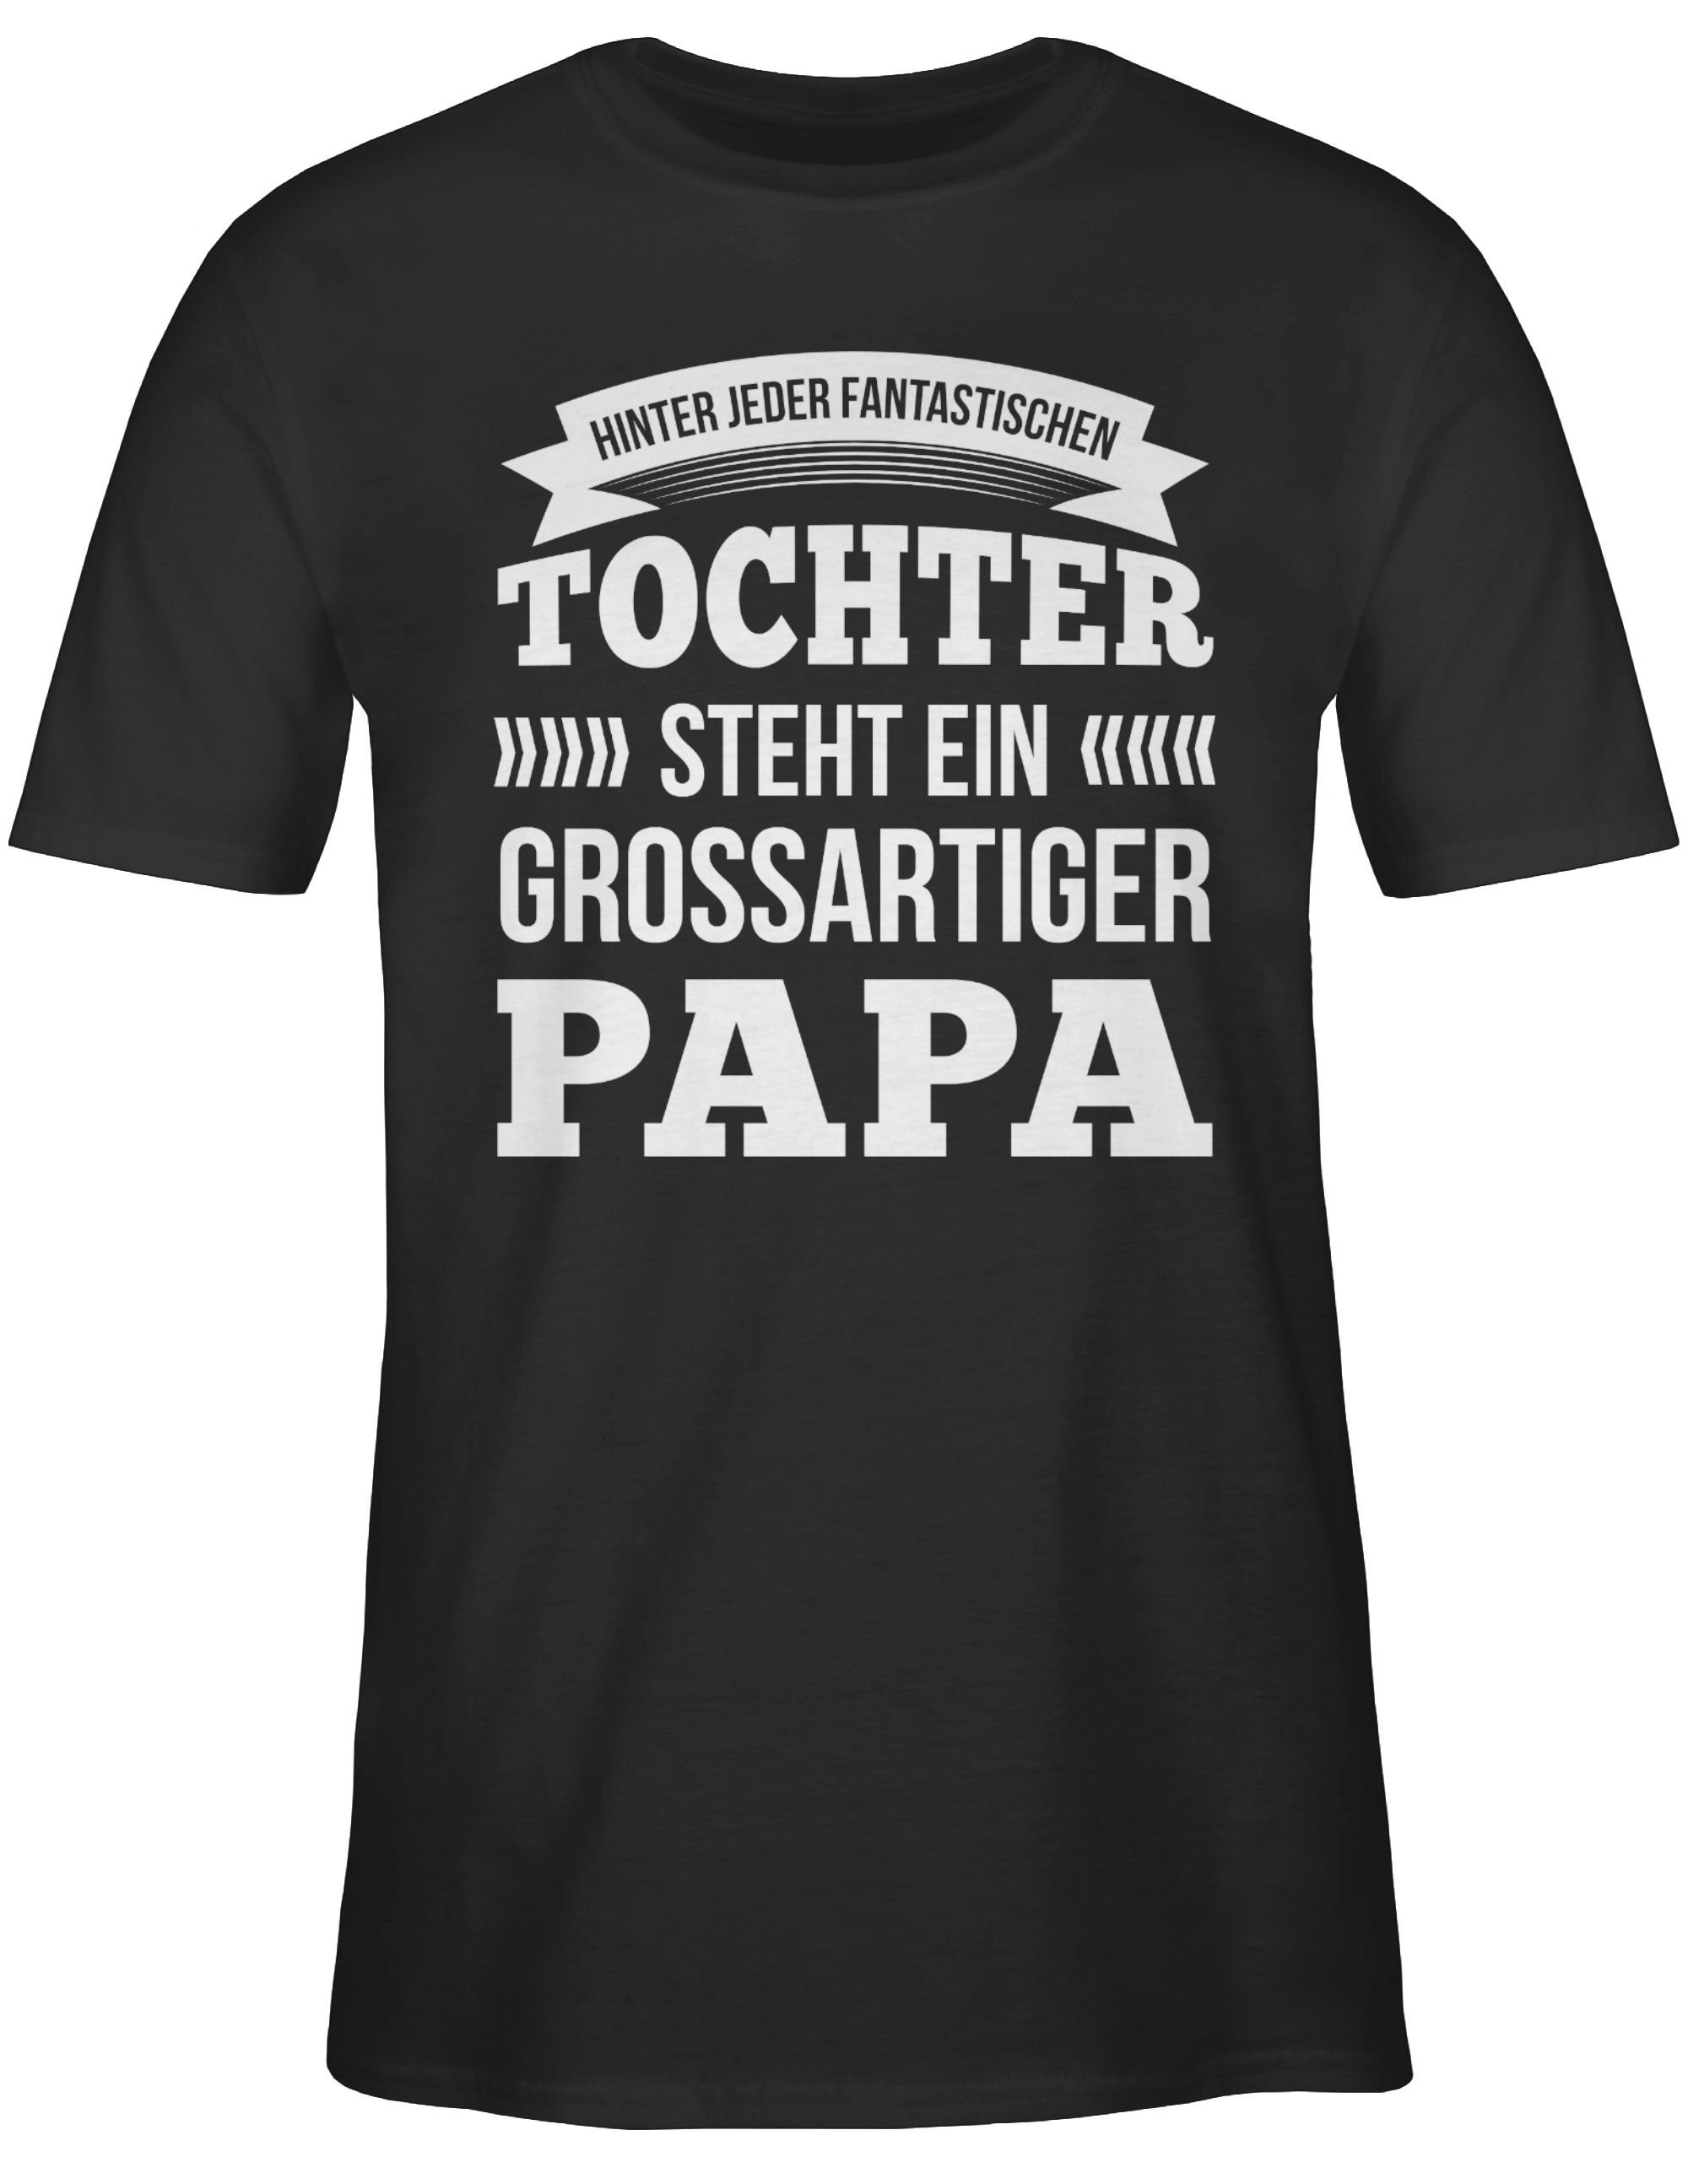 T-Shirt Hinter Tochter Papa Vatertag Großartiger für Papa Schwarz Ein Steht Shirtracer jeder 2 Geschenk